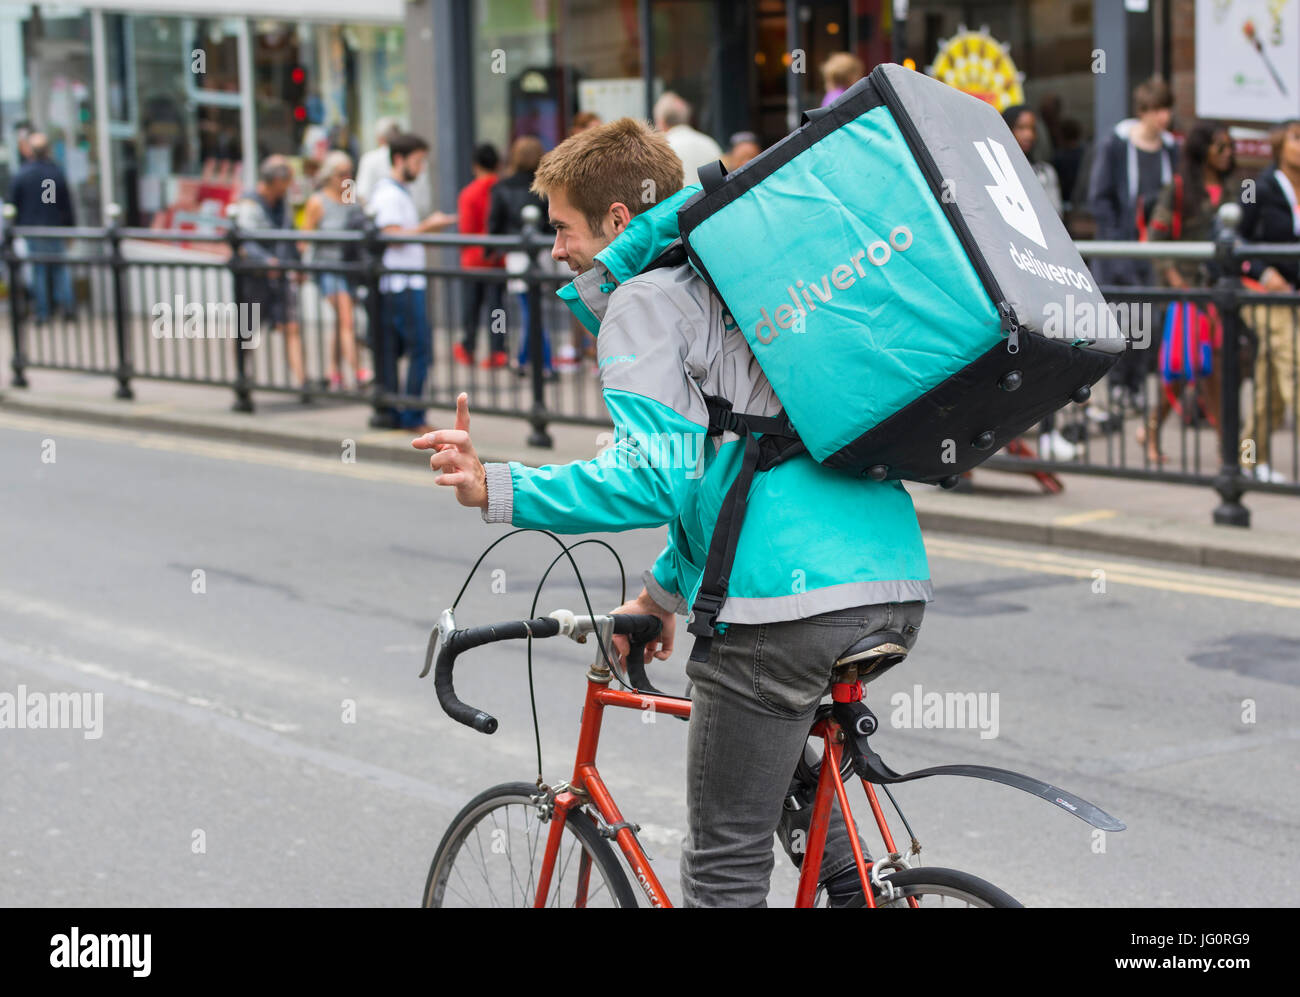 Deliveroo cycliste livraison de rouler à vélo dans une ville à Brighton, East Sussex, Angleterre, Royaume-Uni. Banque D'Images